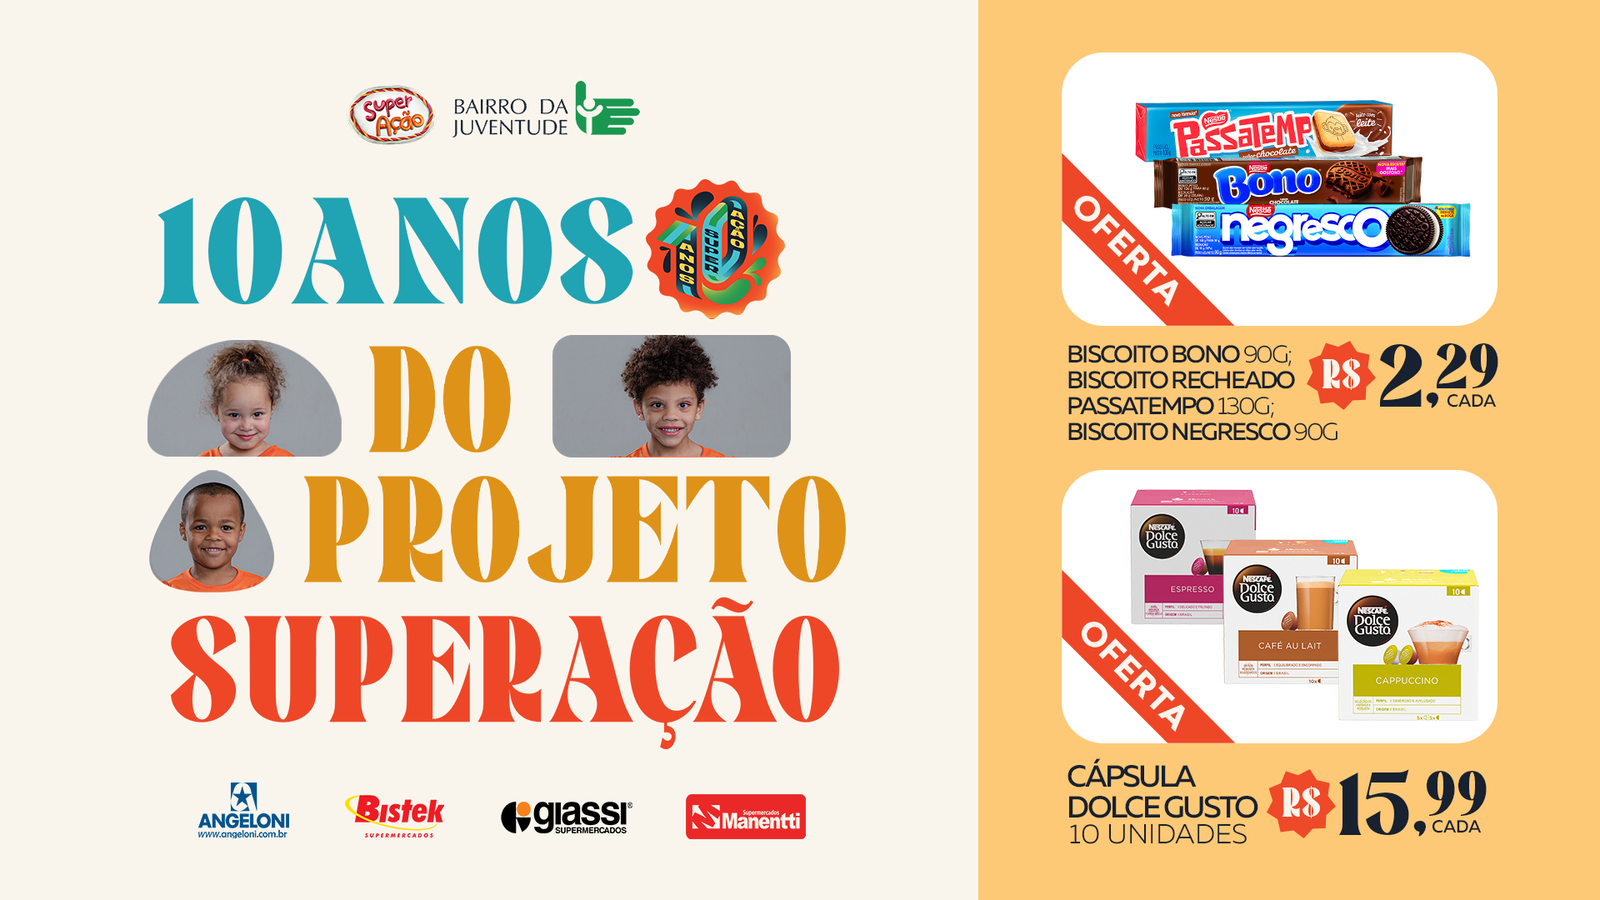 Nestlé é parceira da campanha SuperAção do Bairro da Juventude